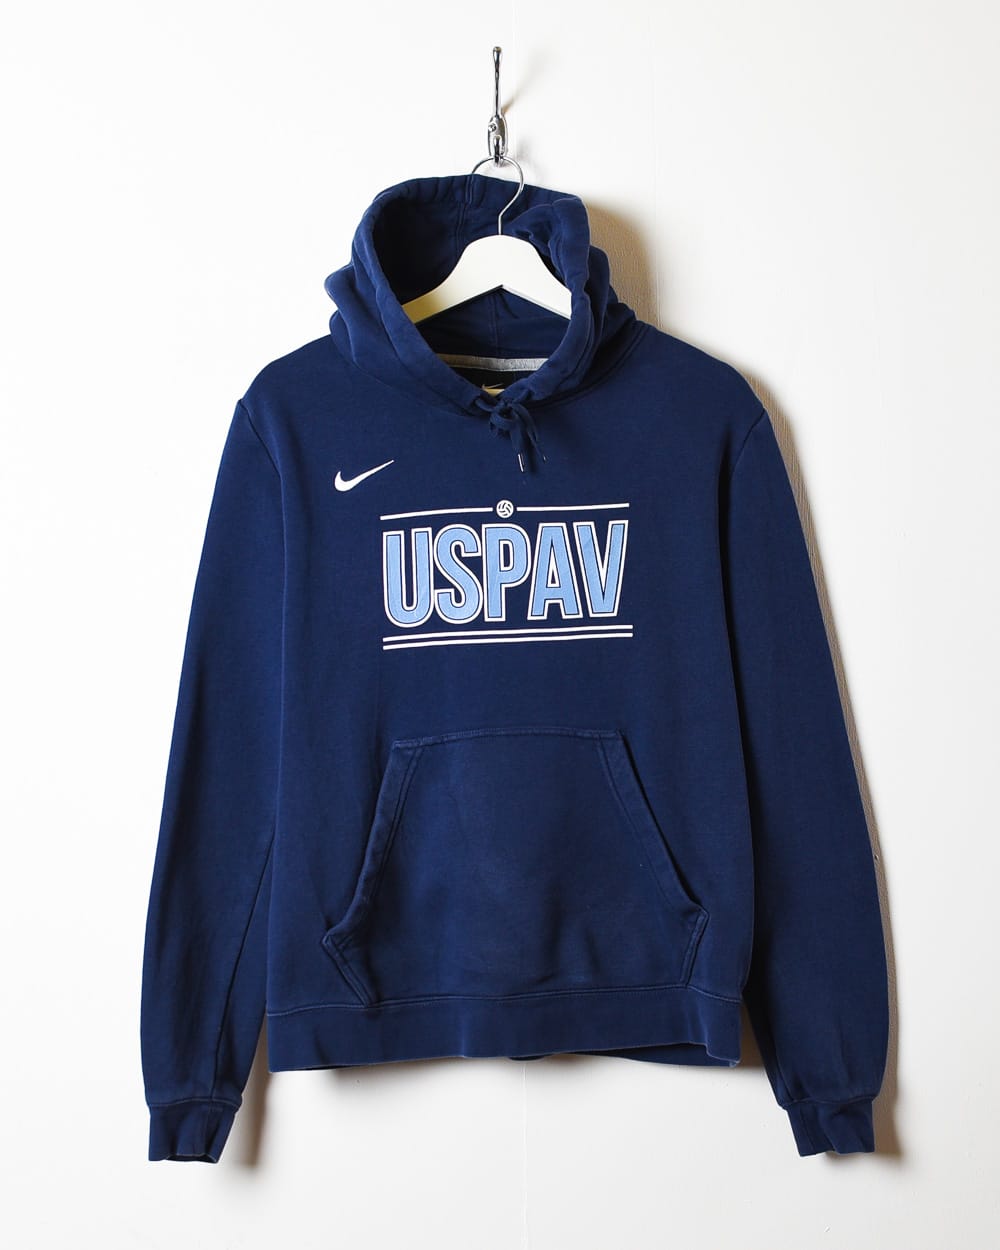 Navy Nike Uspan Hoodie - Small